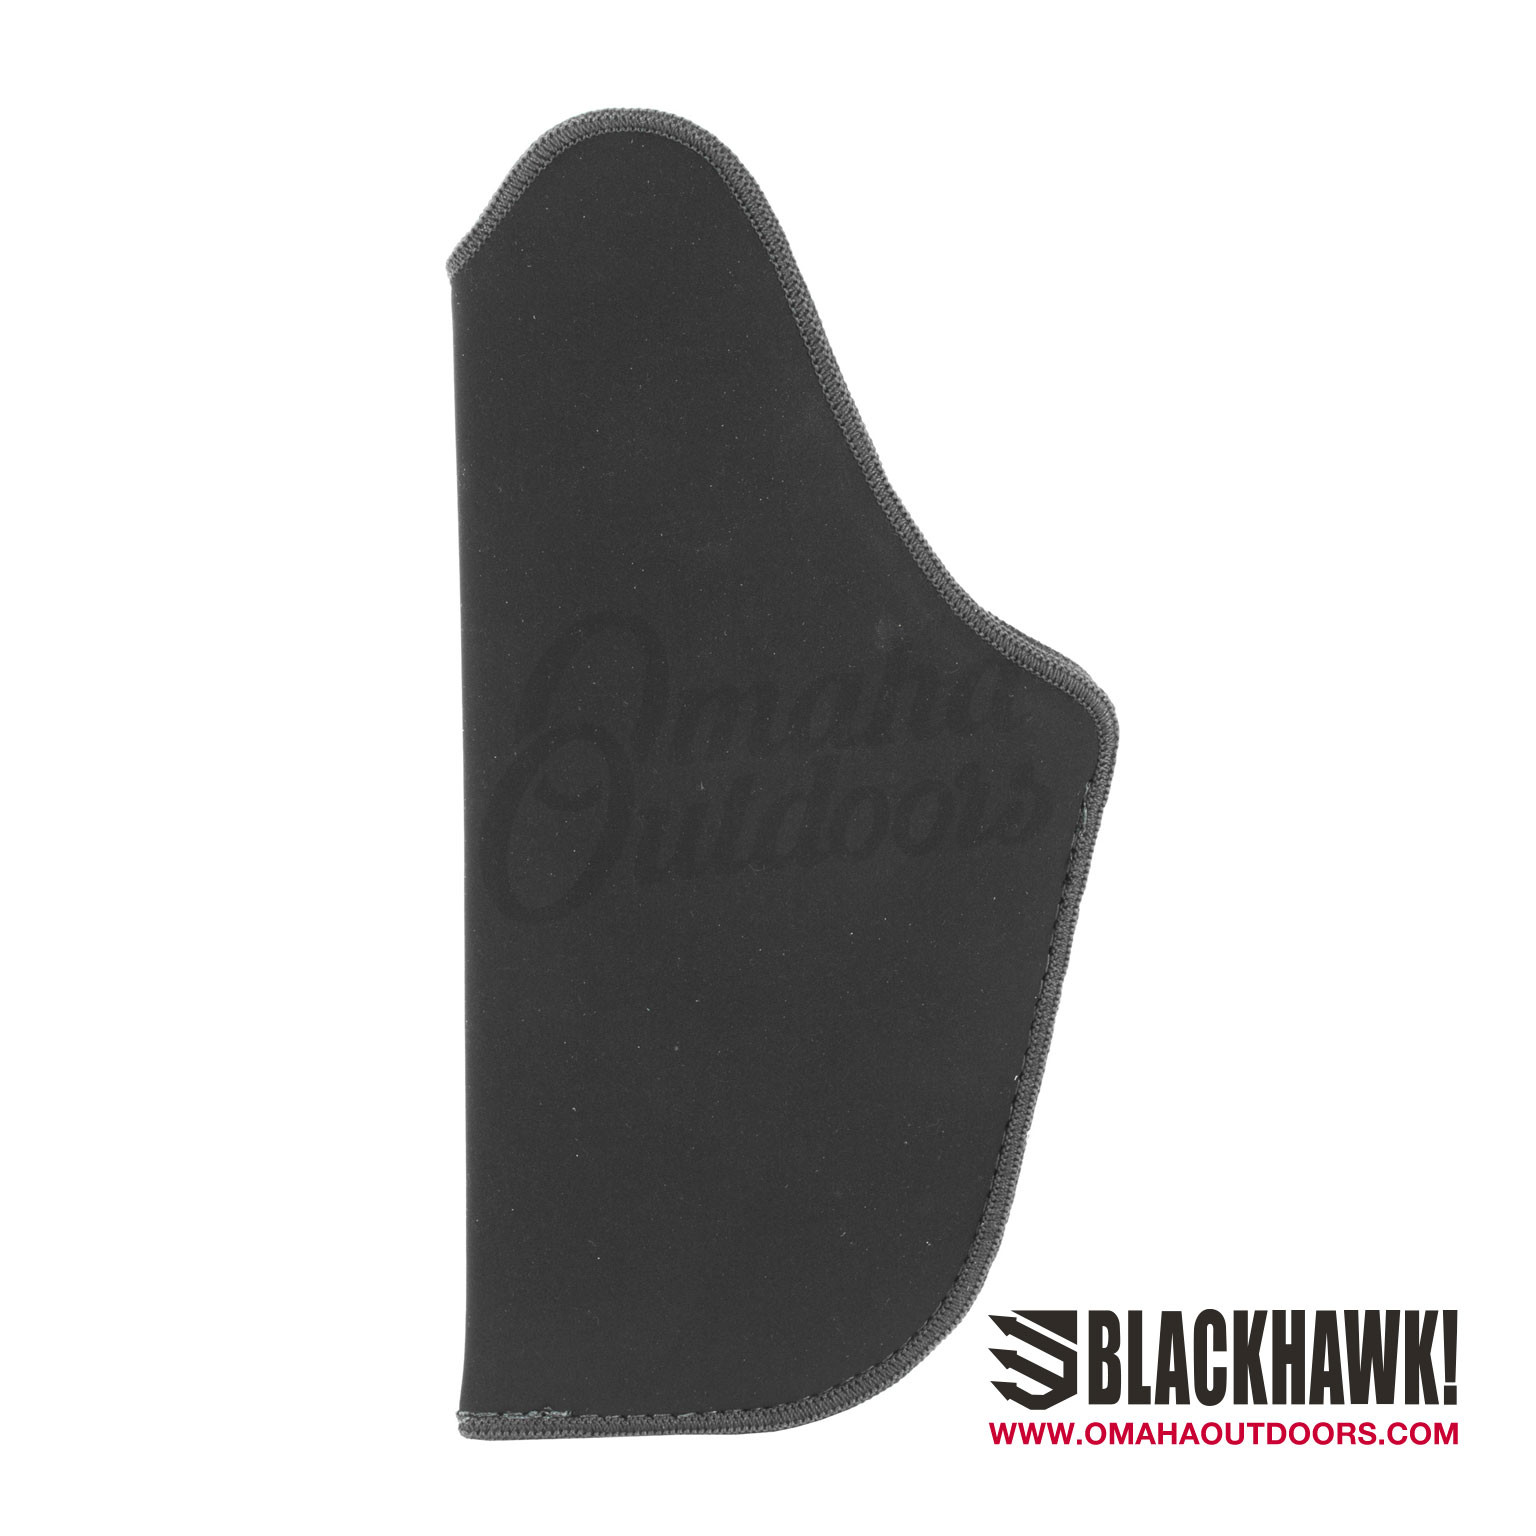 Blackhawk Stache IWB Holster For Glock 19 / 23 - Omaha Outdoors